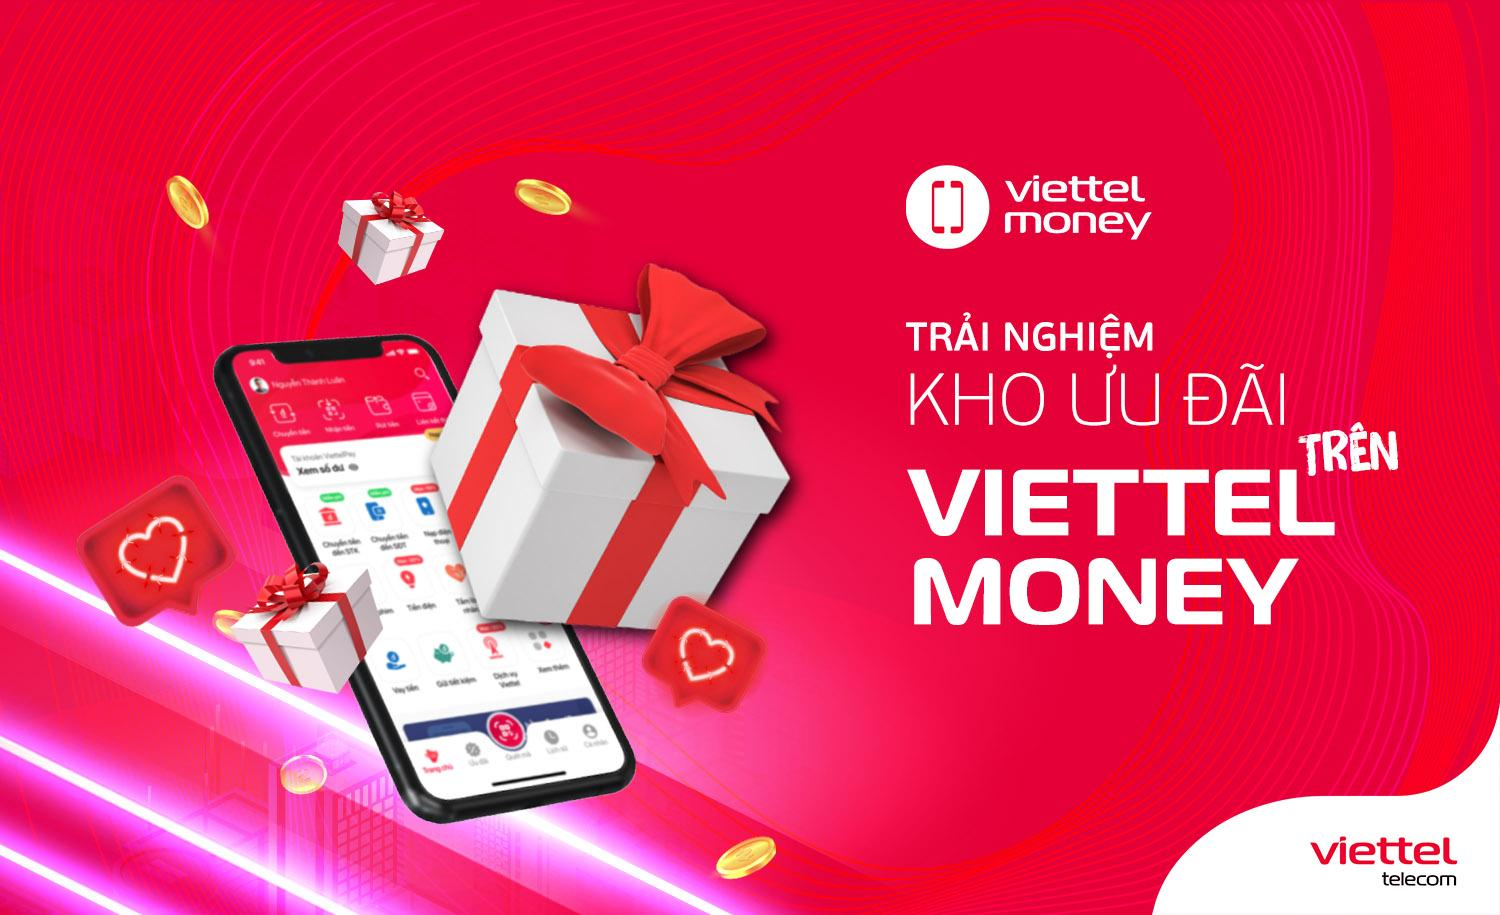 Với ứng dụng Viettel Money bạn có thể tận hưởng cuộc sống một cách trọn vẹn hơn